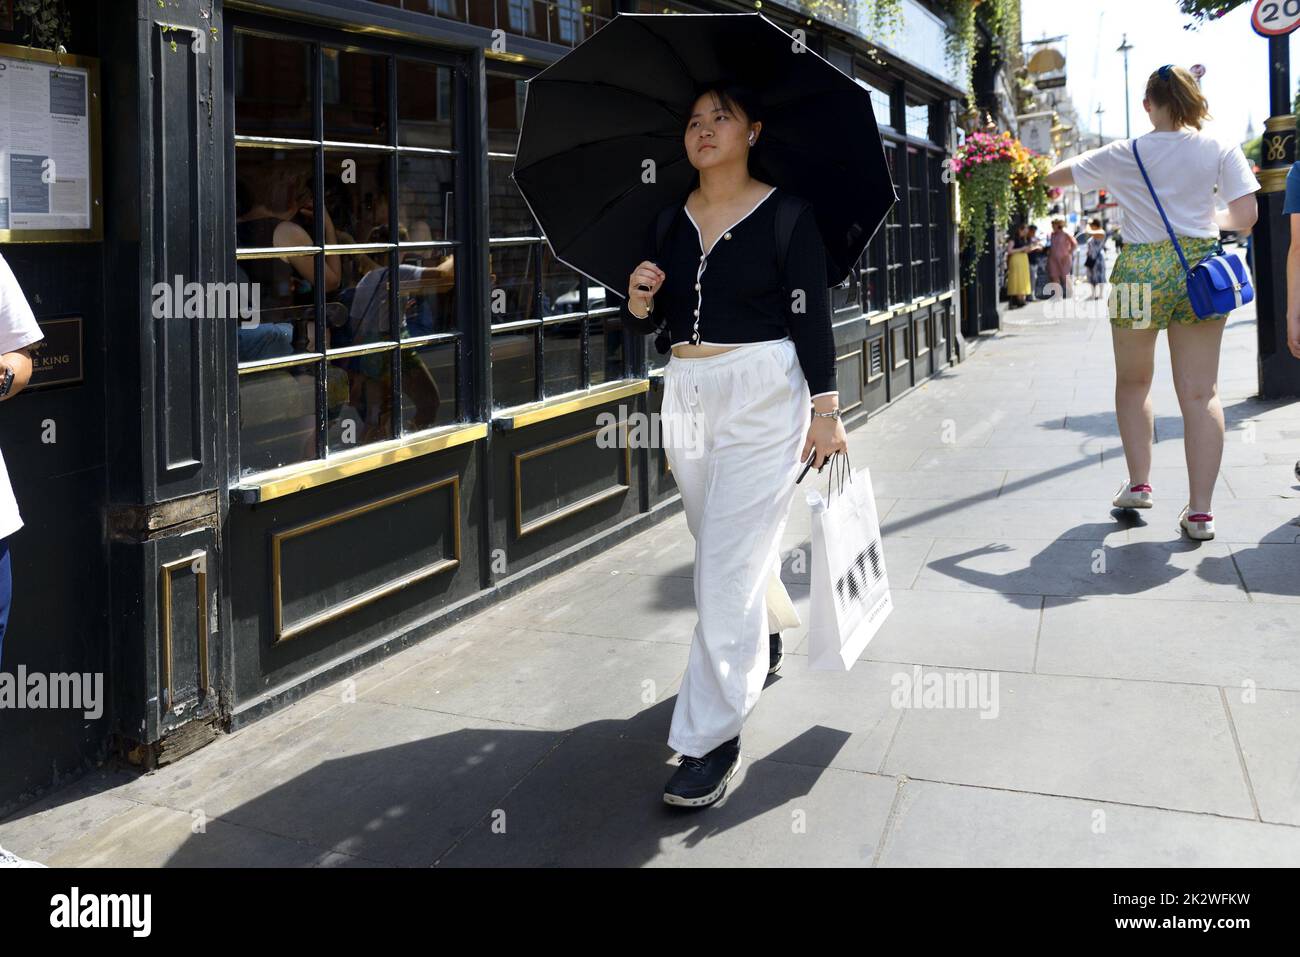 Londres, Angleterre, Royaume-Uni. Femme asiatique avec une unbrella par une chaude journée ensoleillée Banque D'Images